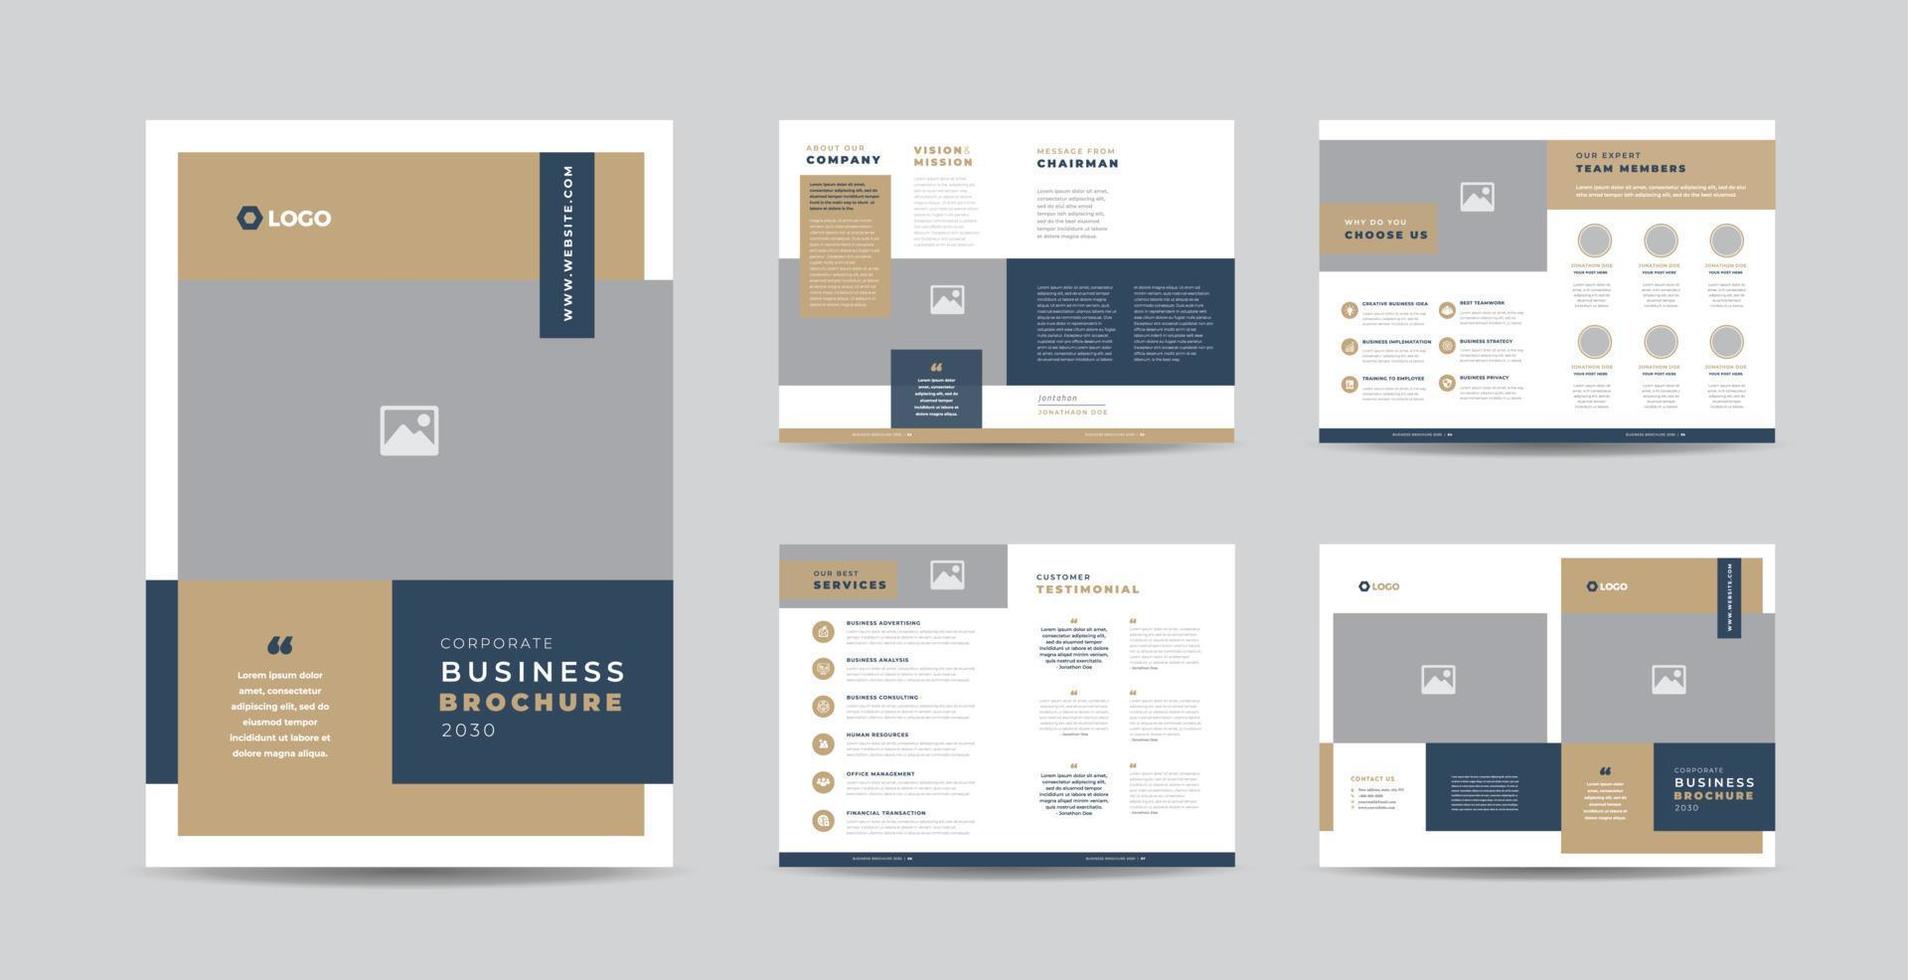 Corporate Business Broschüre Design oder Jahresbericht und Firmenprofil oder Designvorlage für Broschüren und Kataloge vektor